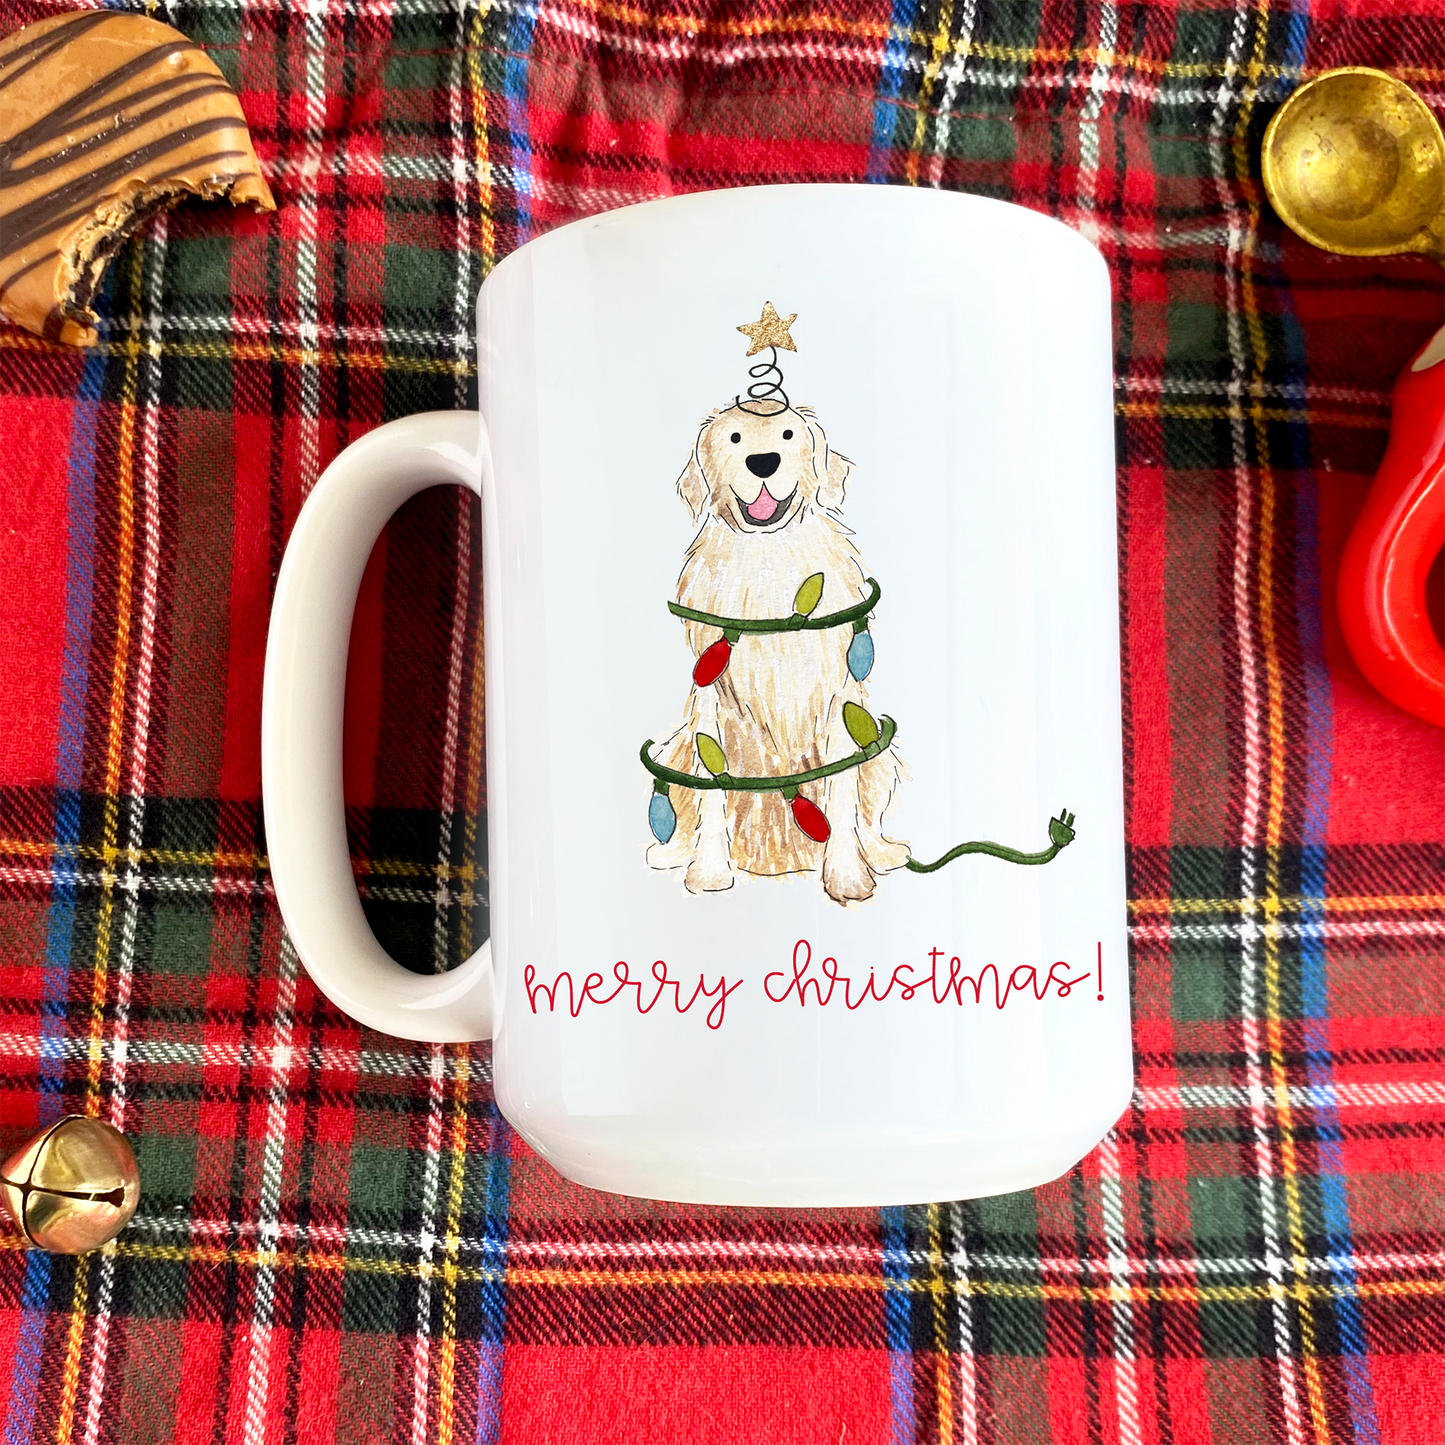 Festive Christmas Golden Retriever Mug